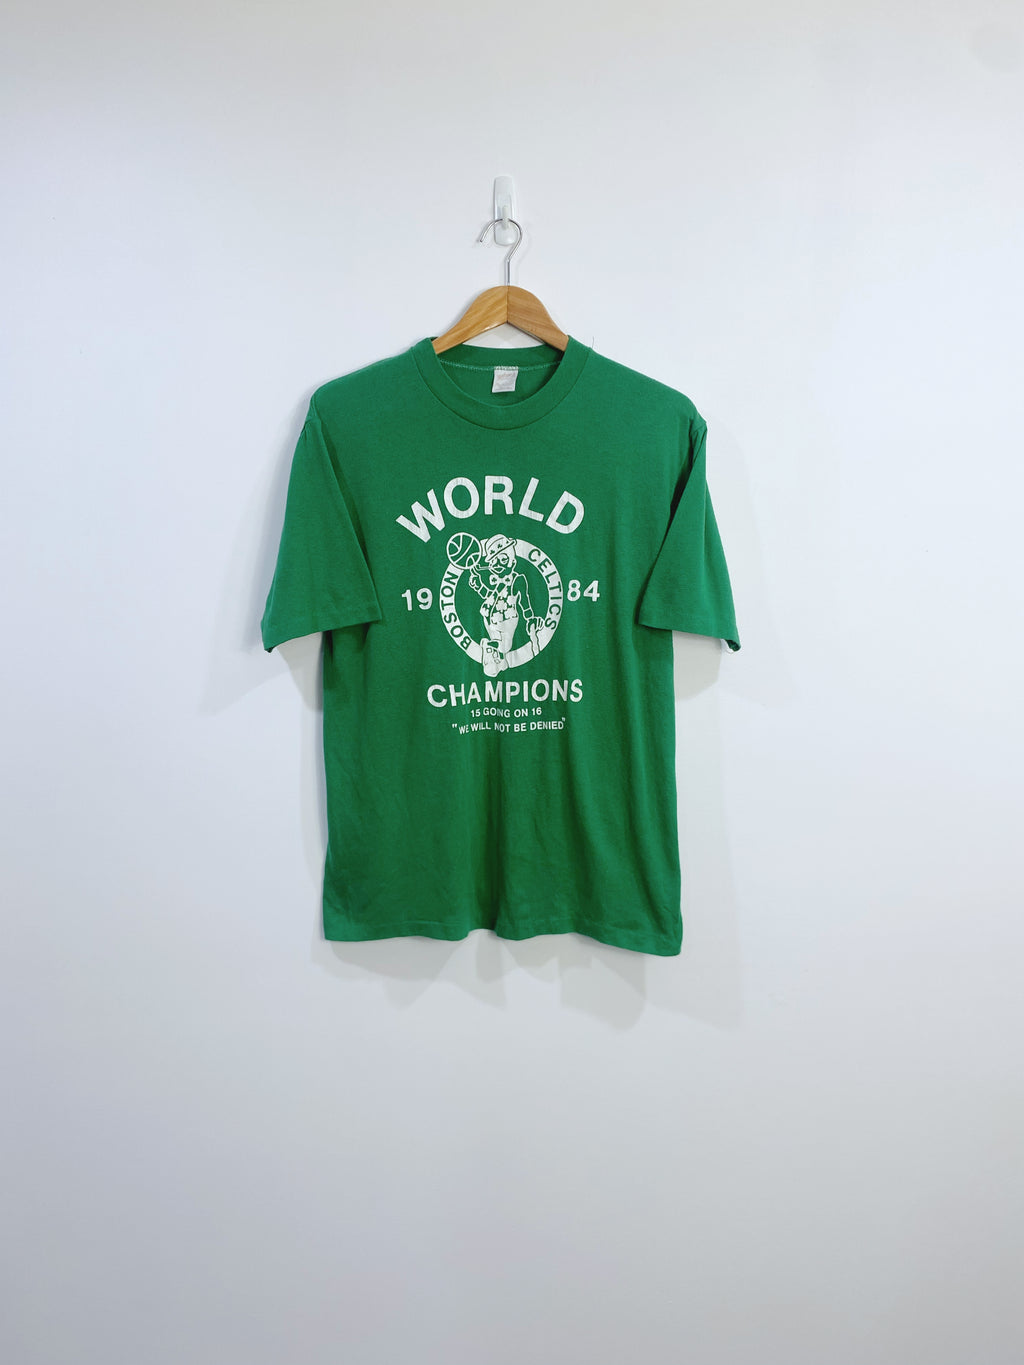 Vintage 1984 Boston Celtics Championship T-shirt M